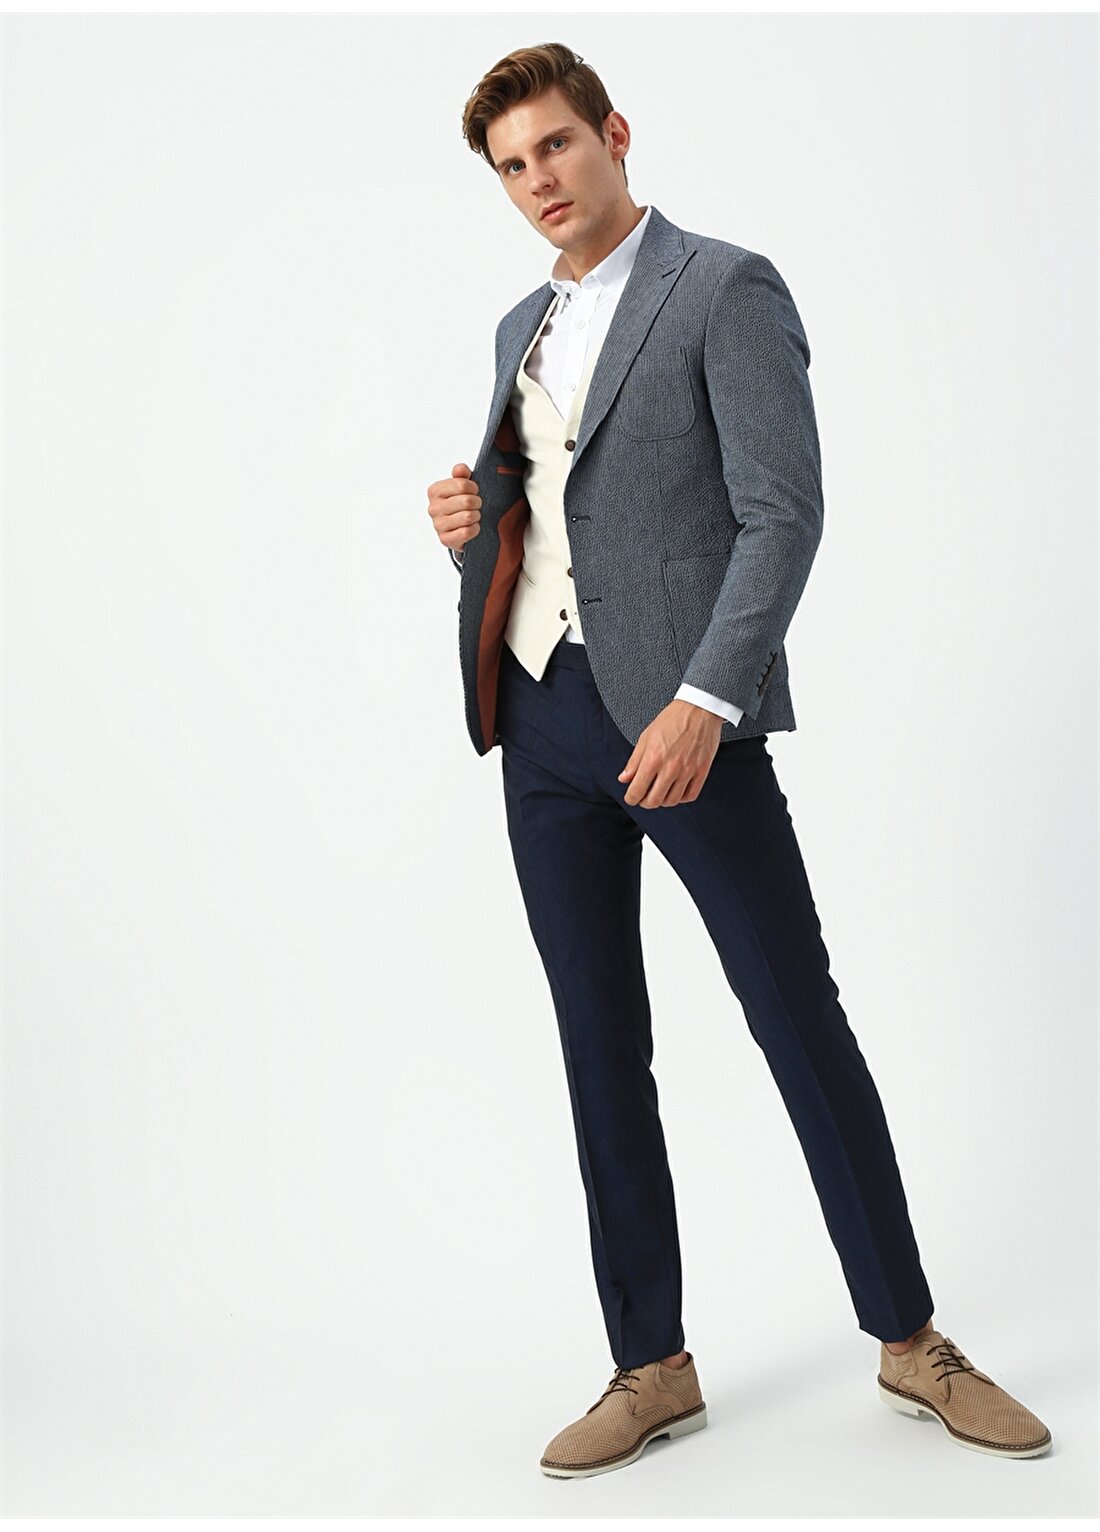 Beymen Business Mono Yaka Uzun Kol Torba Cep Slim Fit Antrasit Erkek Takım Elbise